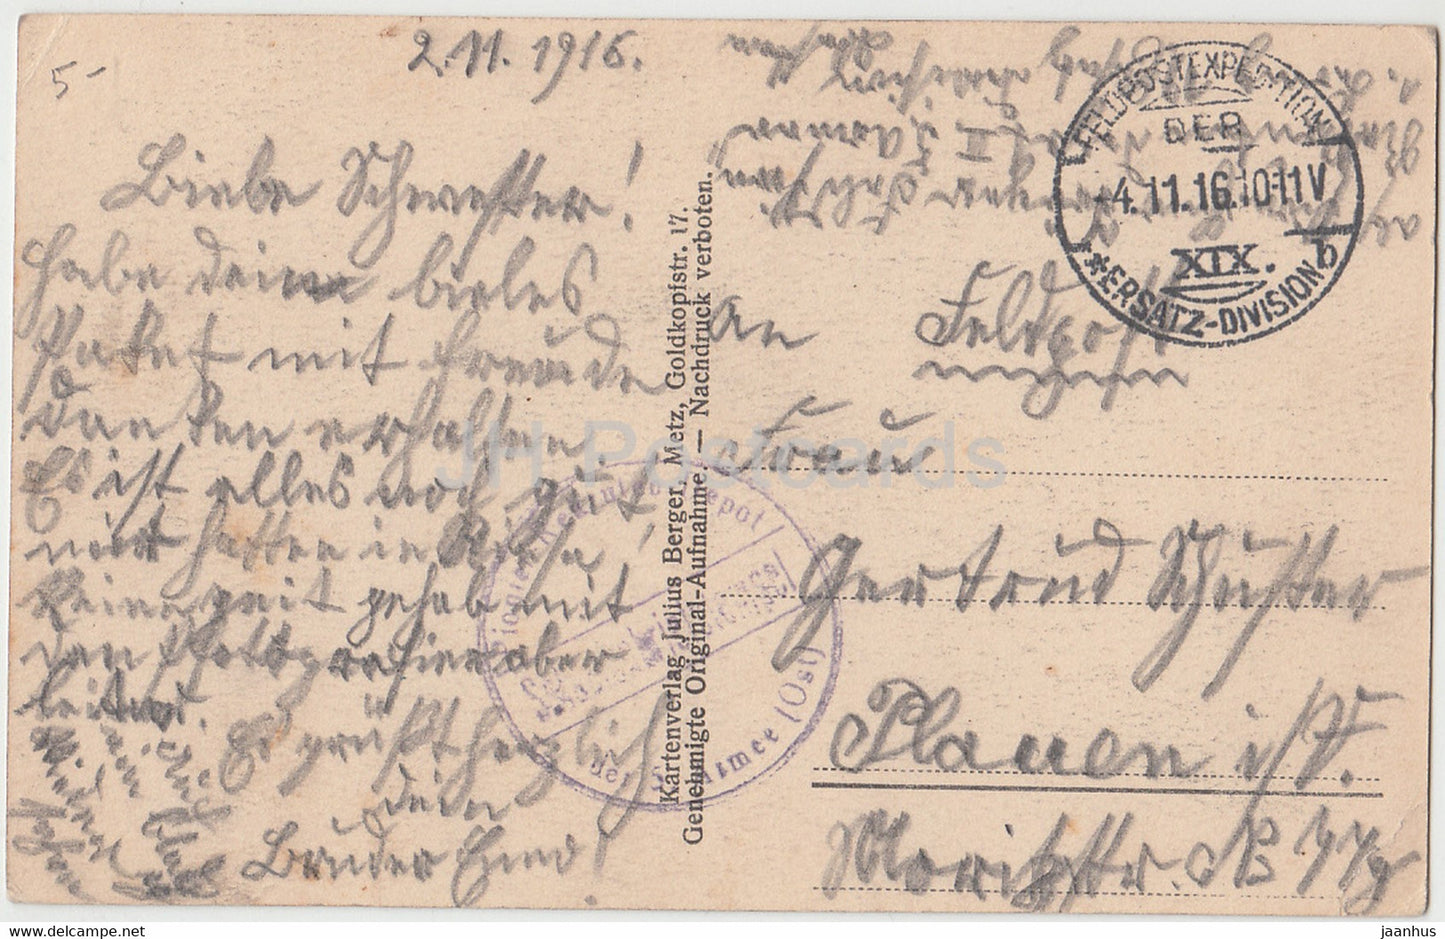 Amelsee - Feldpost - old postcard - 1916 - France - used